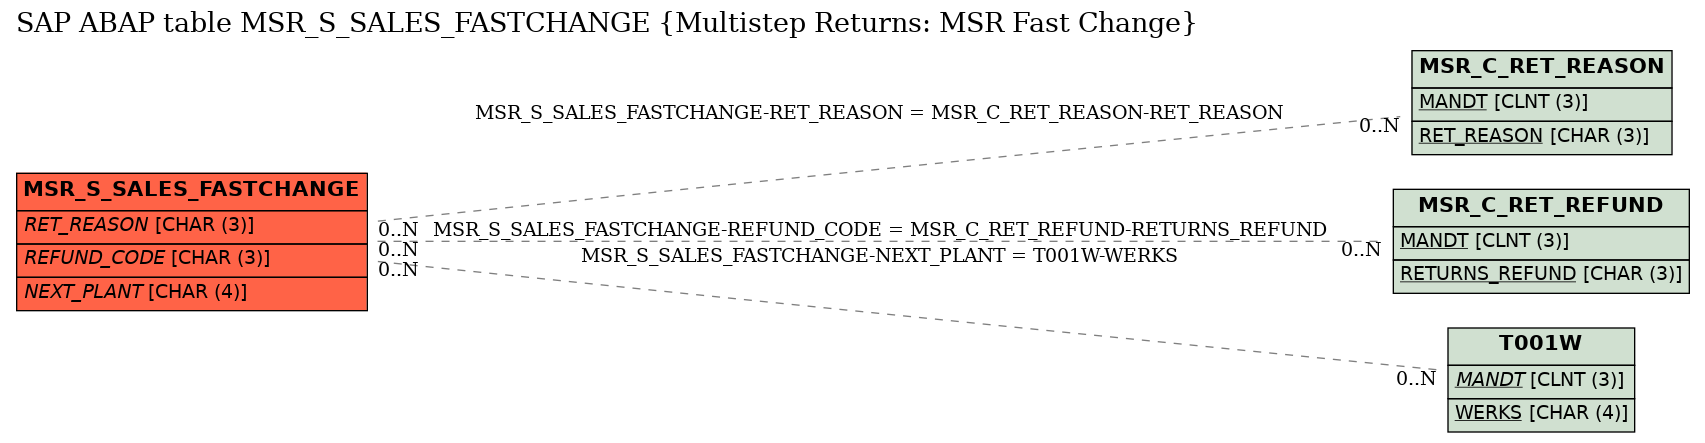 E-R Diagram for table MSR_S_SALES_FASTCHANGE (Multistep Returns: MSR Fast Change)